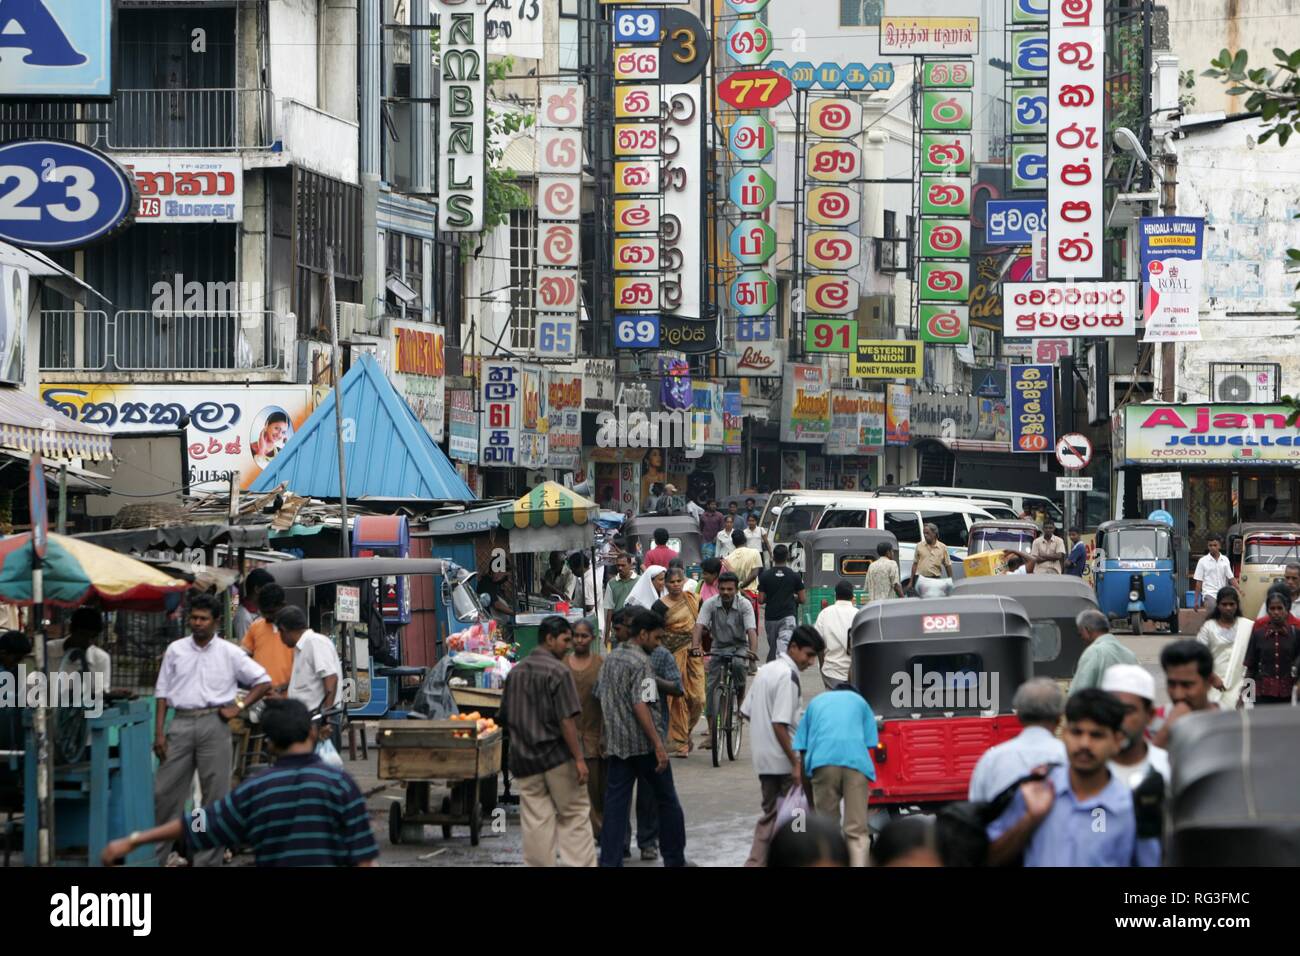 LKA, Sri Lanka : capitale Colombo. Centro citta', Zona per lo shopping locale, mercati, nel quartiere di Pettah. Foto Stock